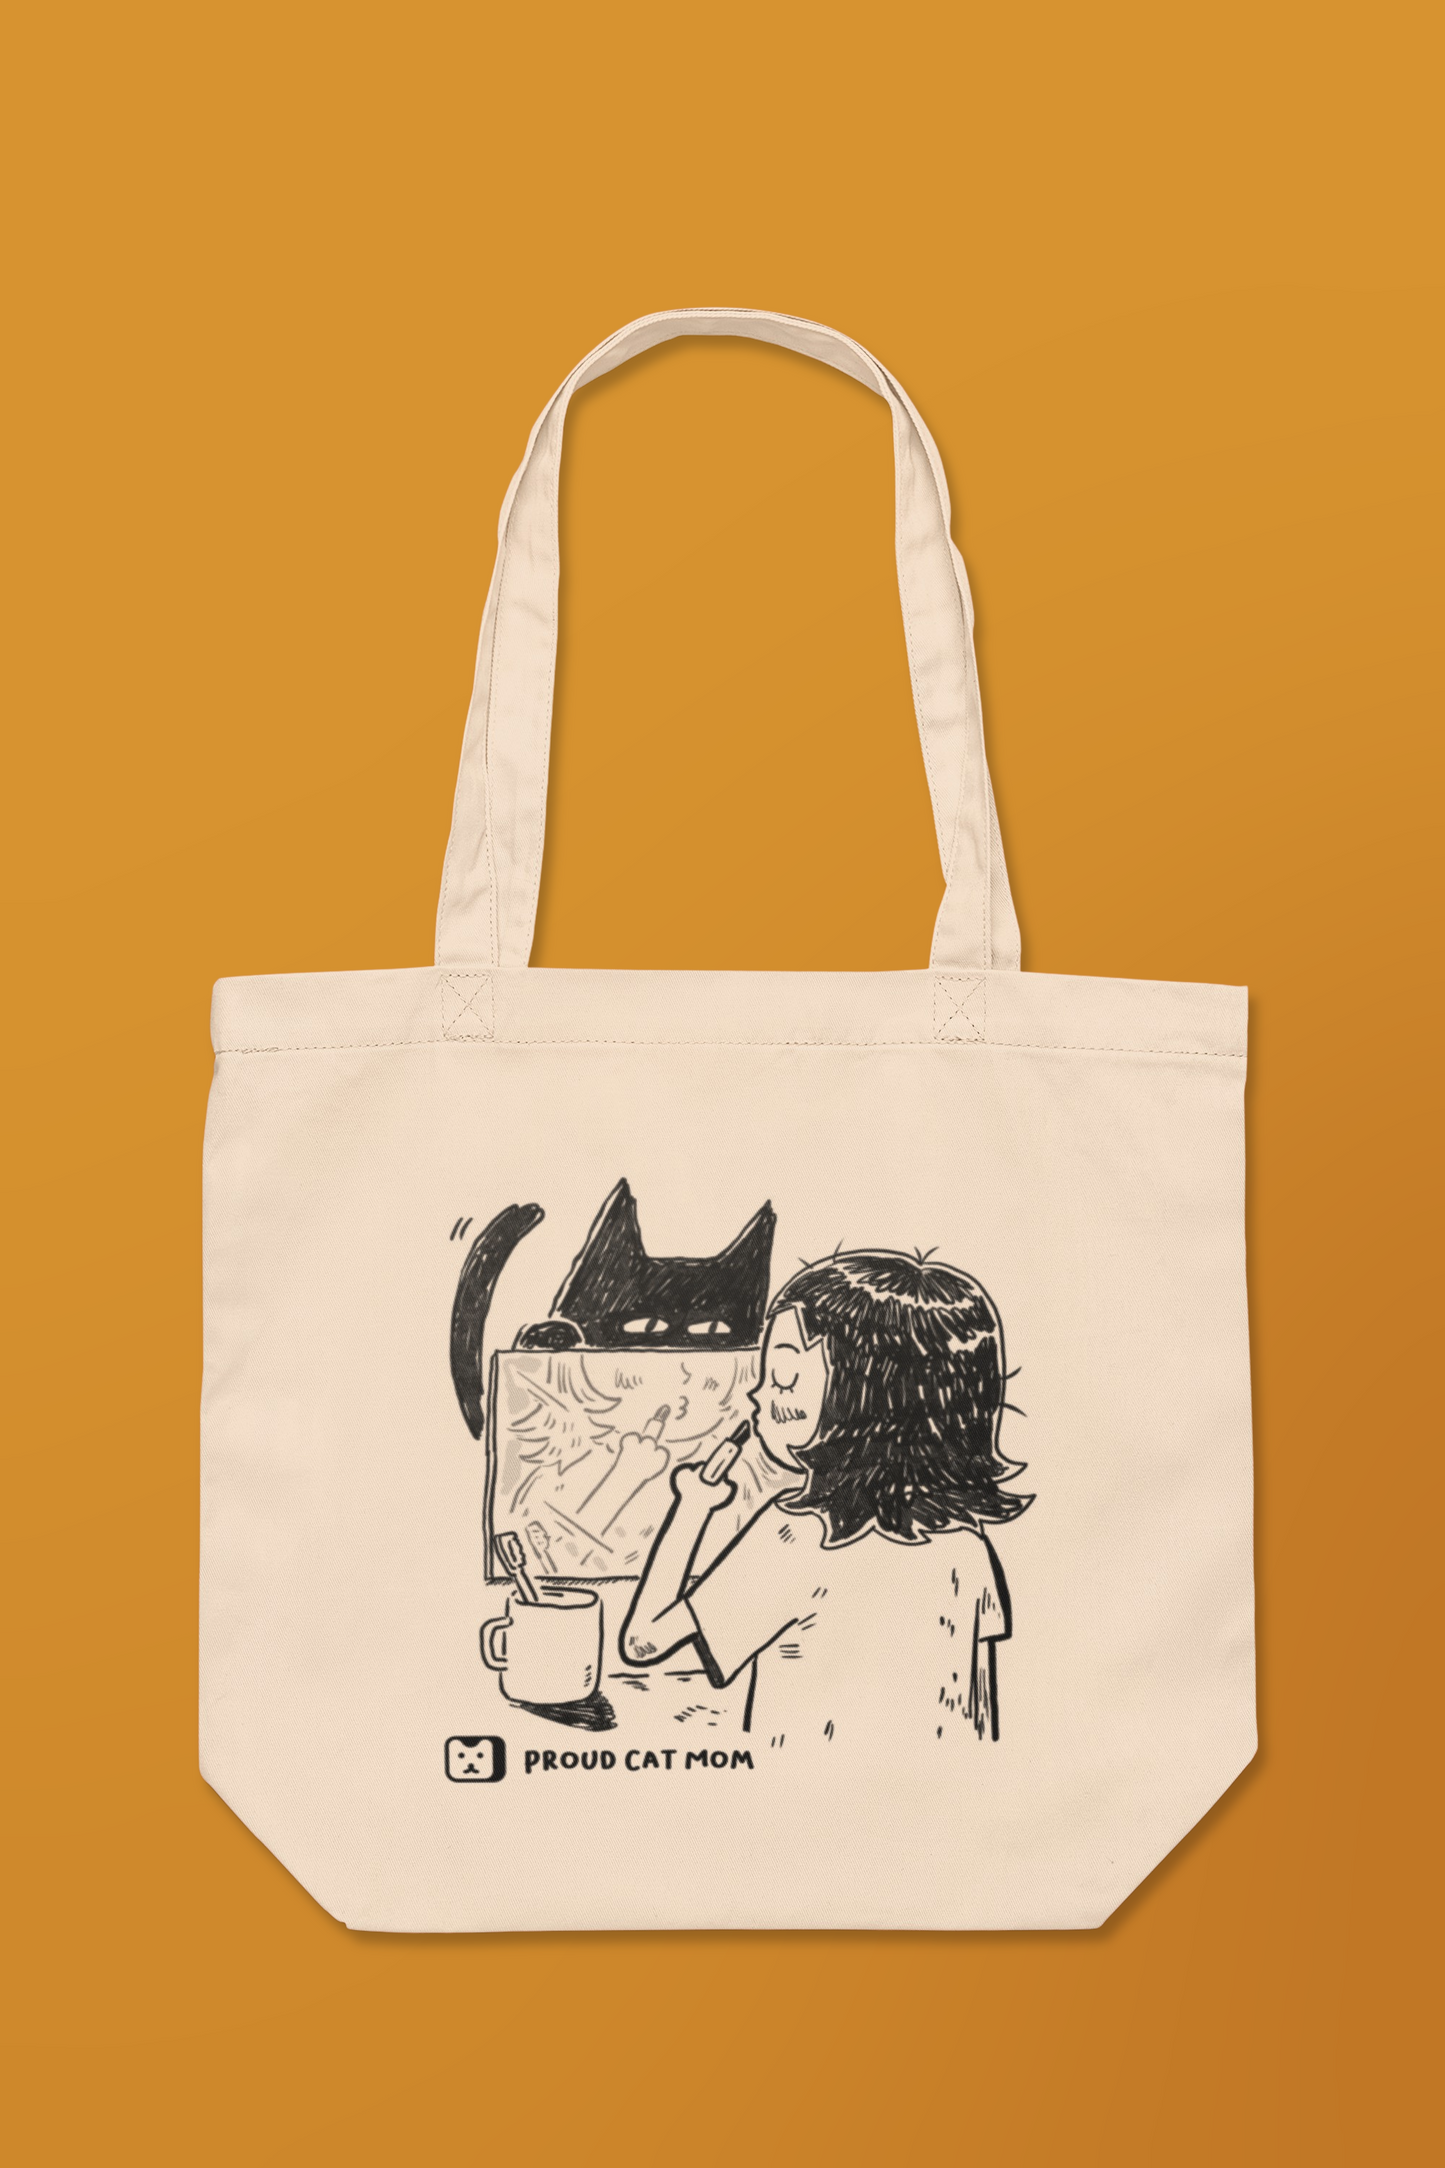 "Proud Cat Mom" Tote Bag